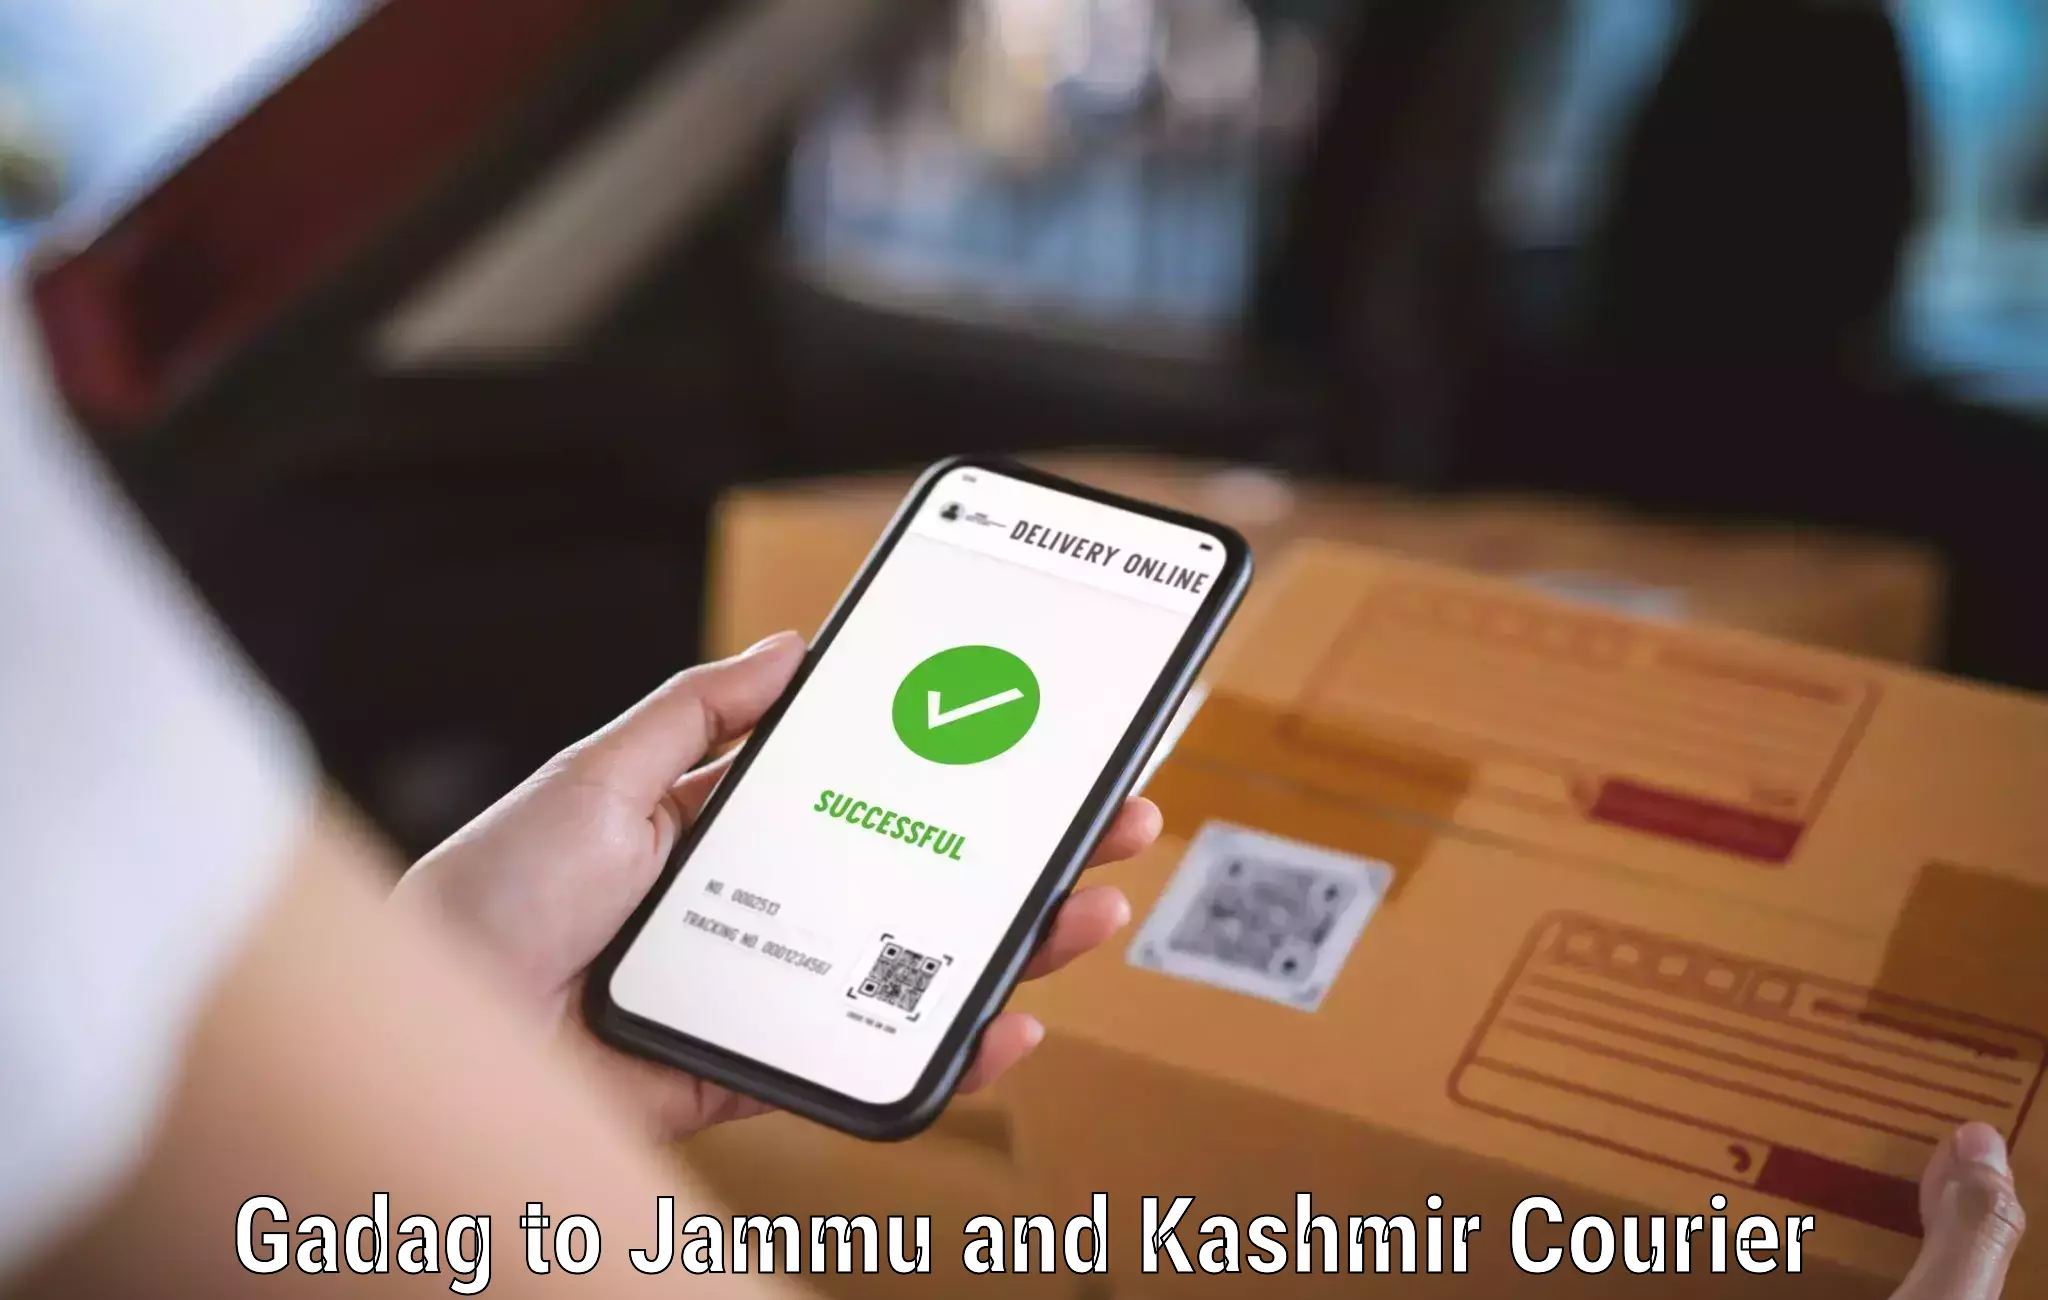 24-hour courier services Gadag to Jammu